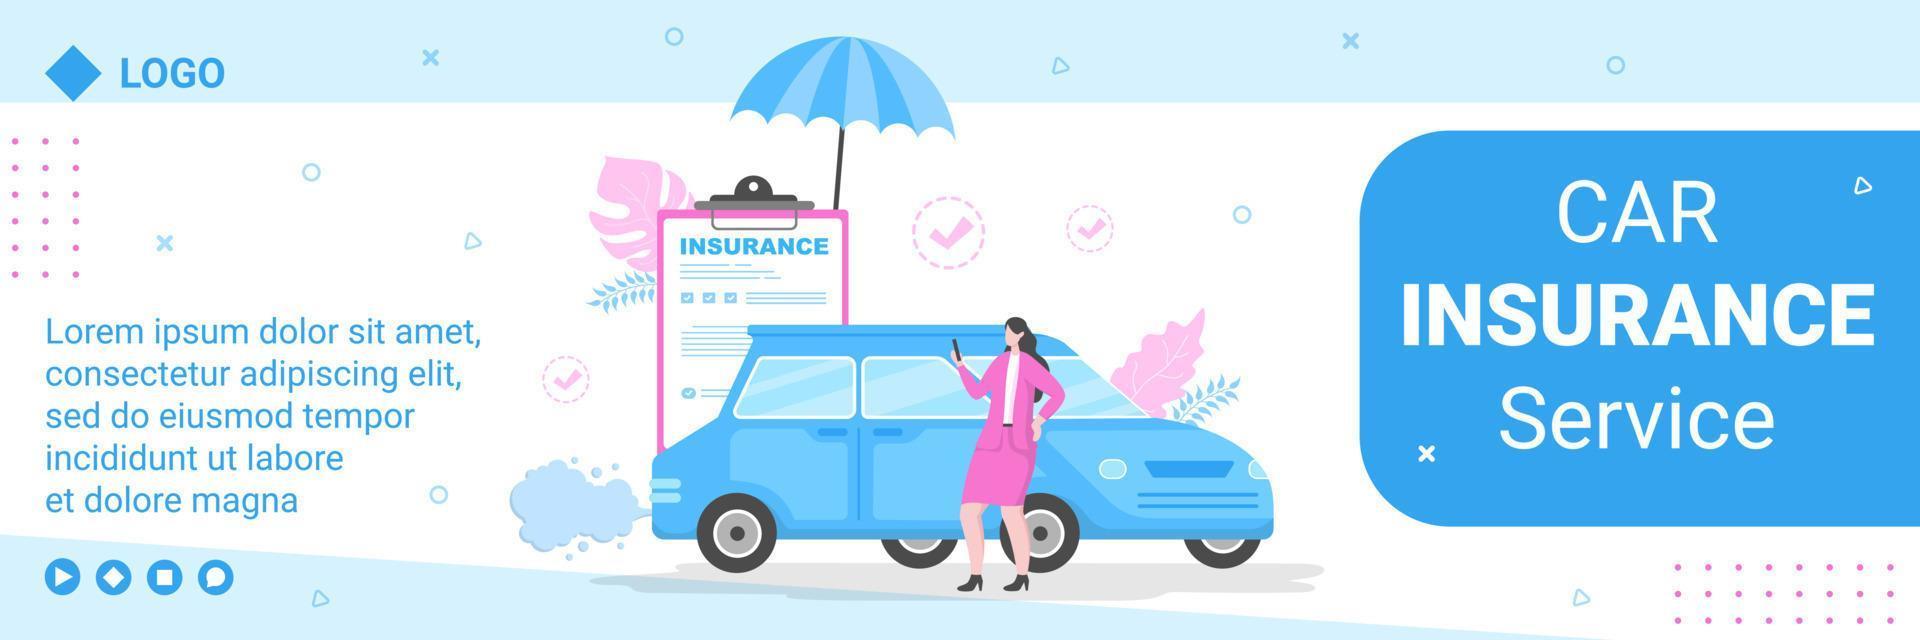 ilustração de design plano de modelo de cobertura de seguro de carro editável de fundo quadrado adequado para mídia social, cartão comemorativo e anúncios de internet na web vetor